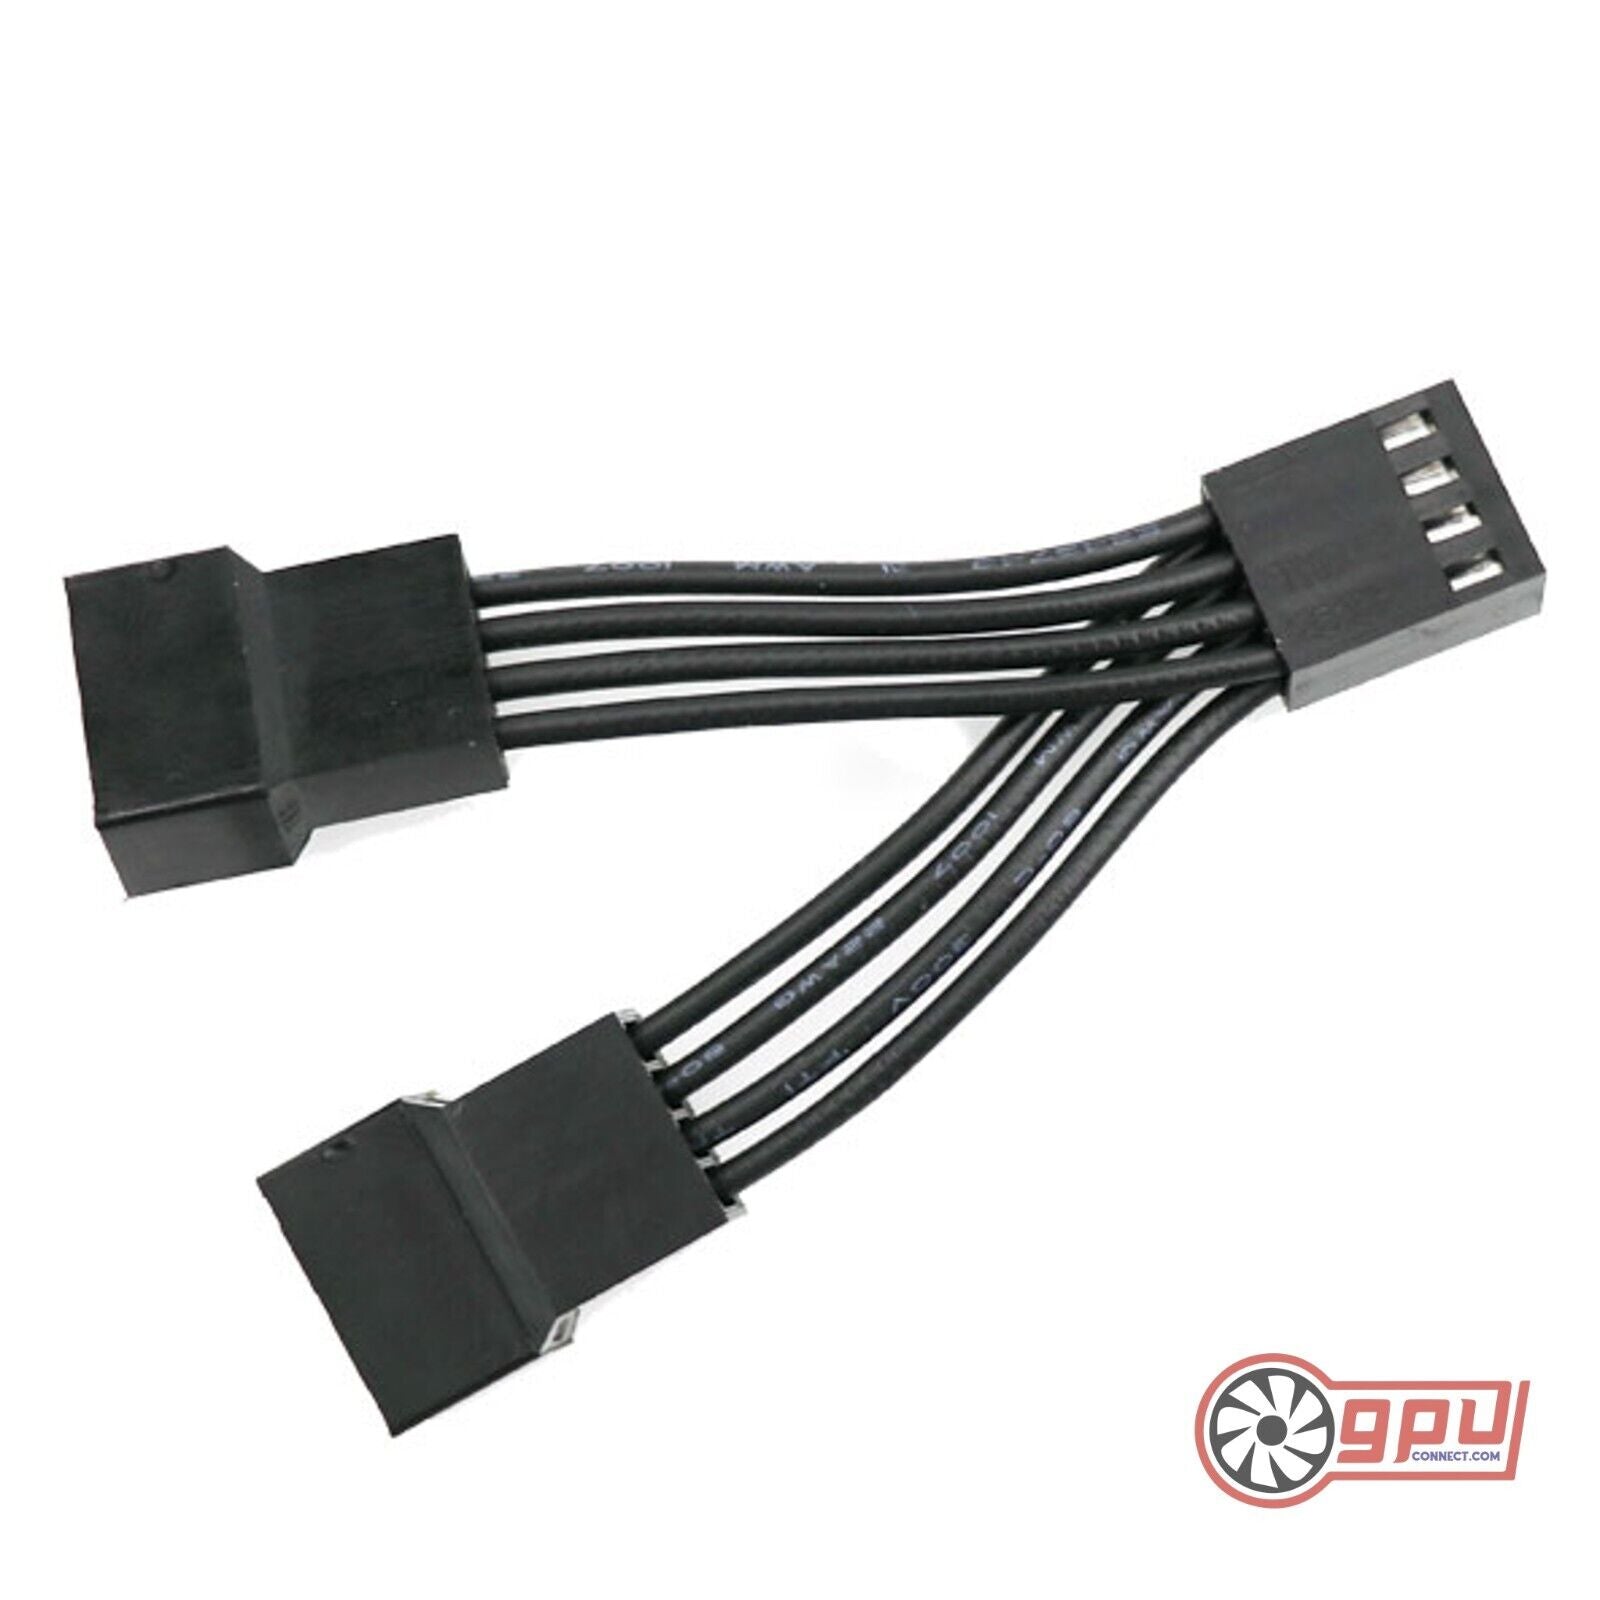 Fan Splitter Cable Dual PWM for CPU / GPU - 5cm –